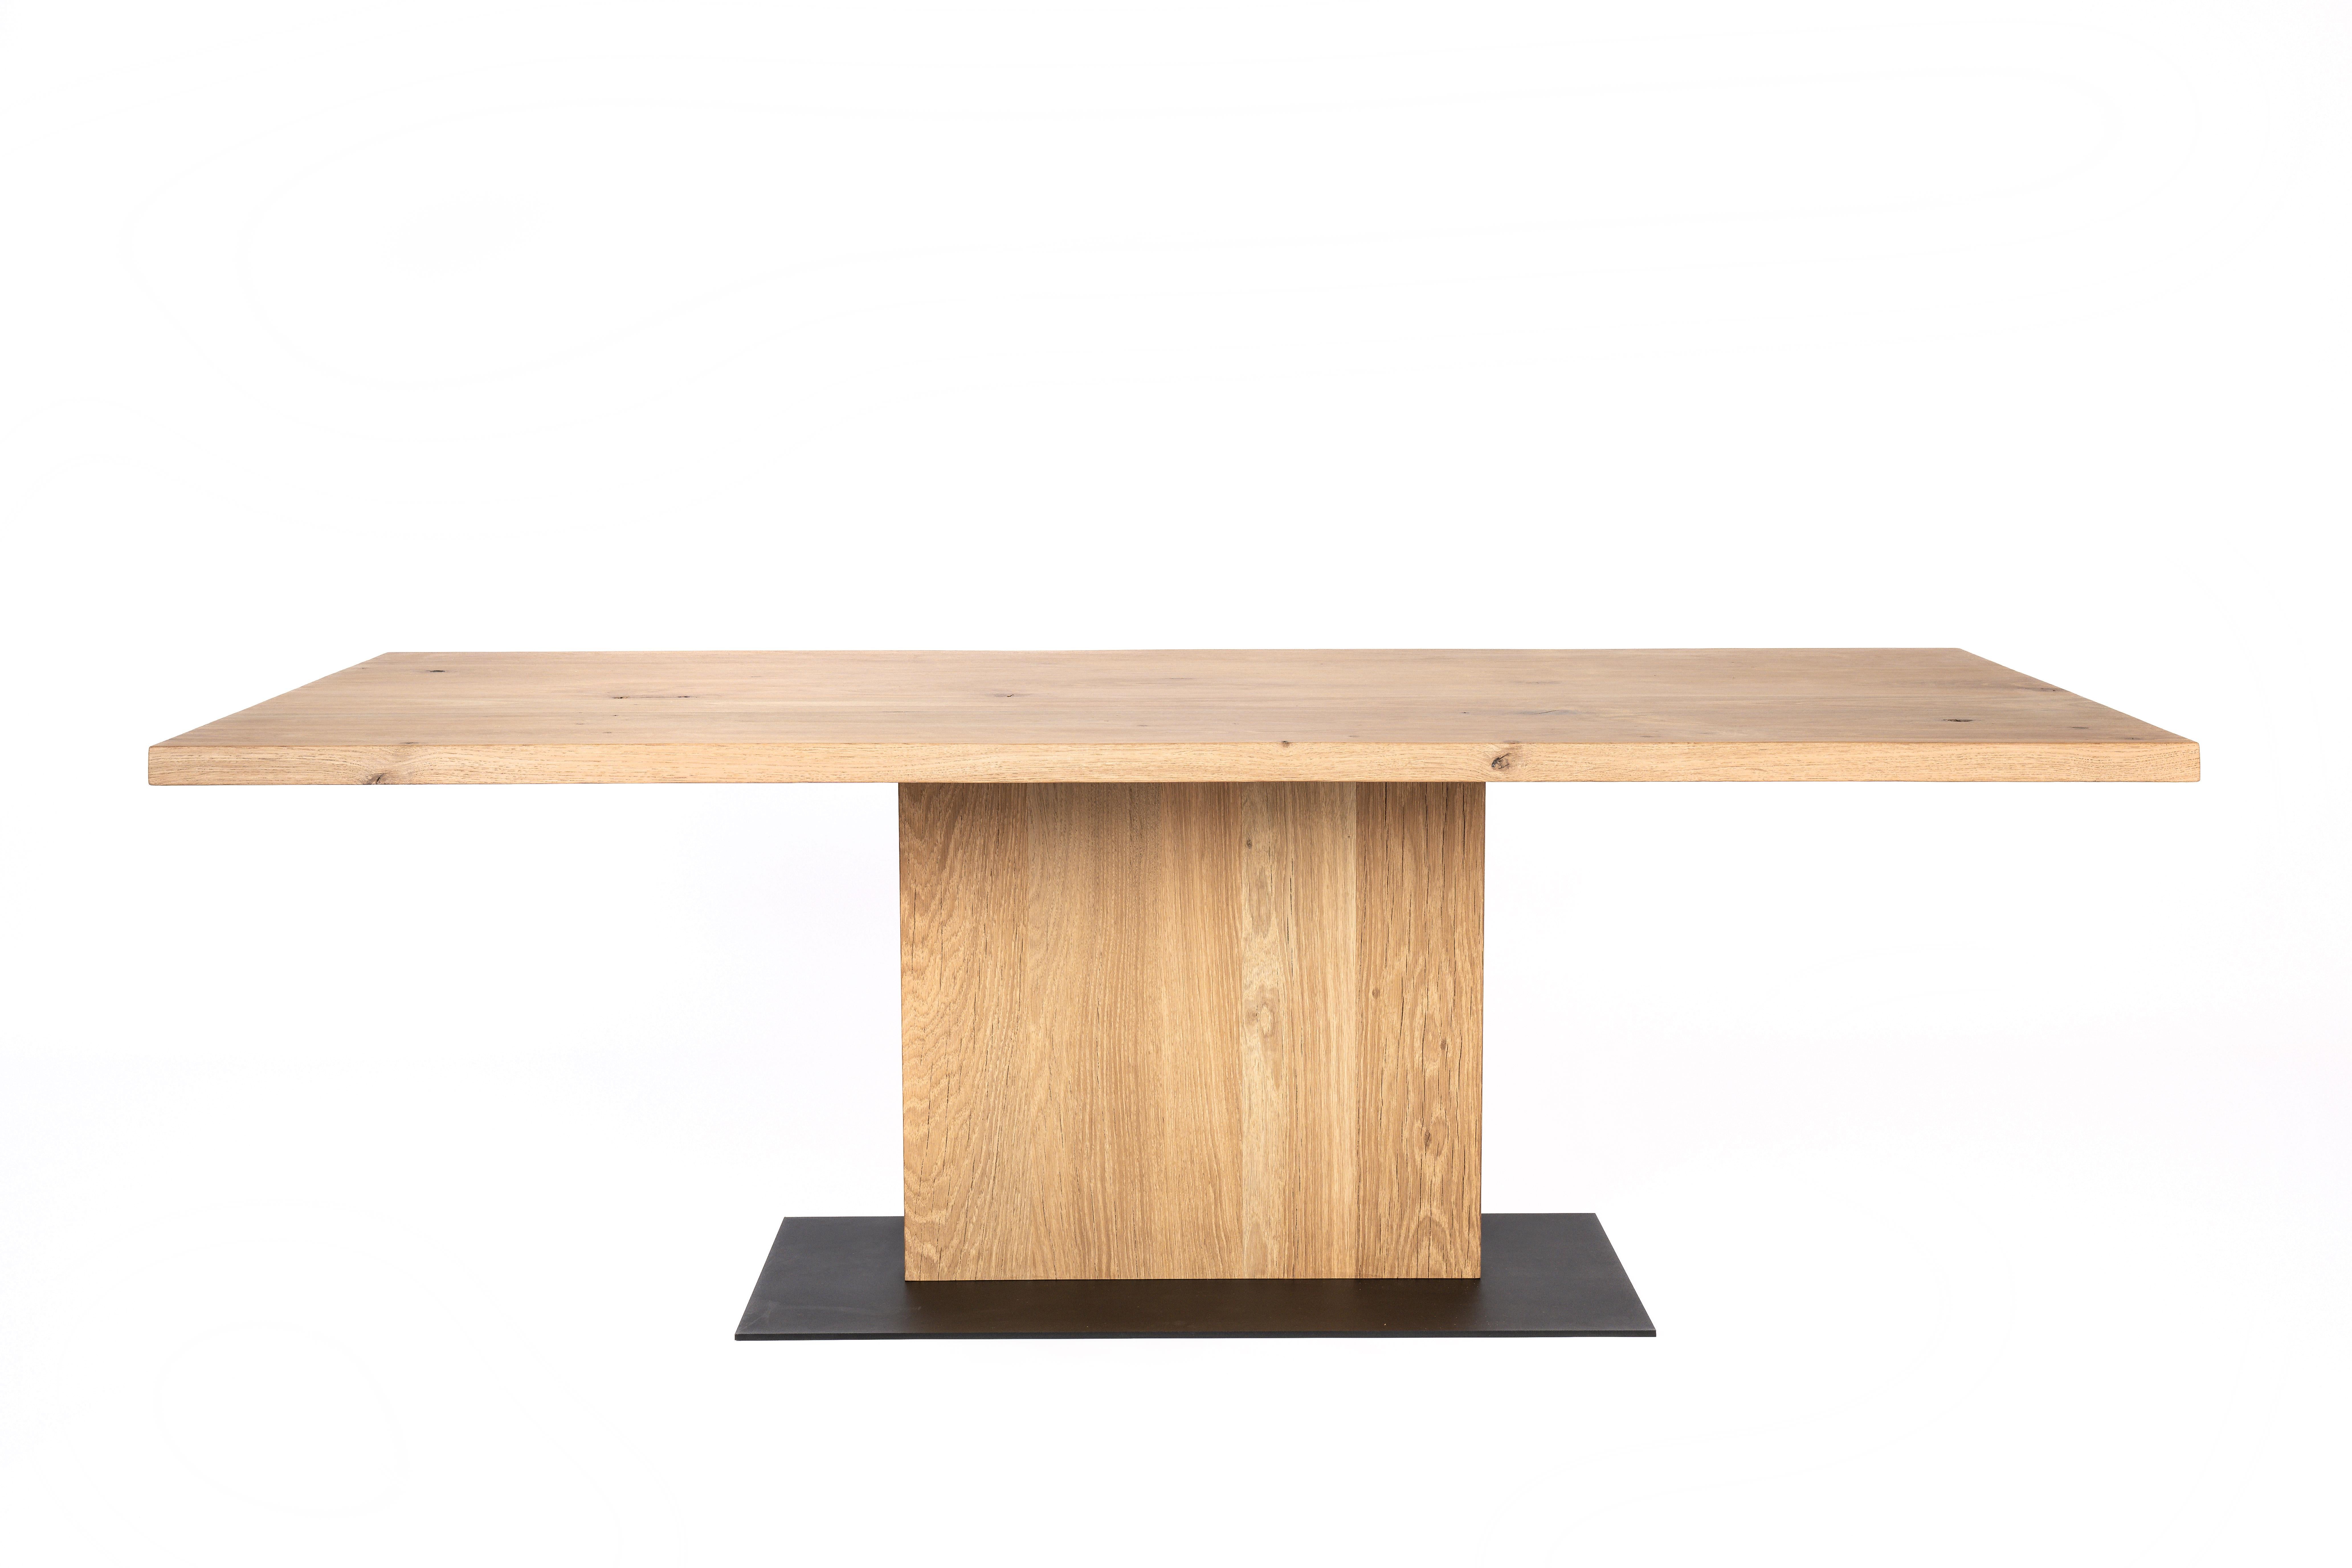 Nous vous présentons notre table de salle à manger Modern Rustic avec plateau flottant - une fusion d'esthétique contemporaine et de savoir-faire artisanal conçue pour rehausser votre salle à manger.
Fabriqué en chêne massif cuit au four avec une